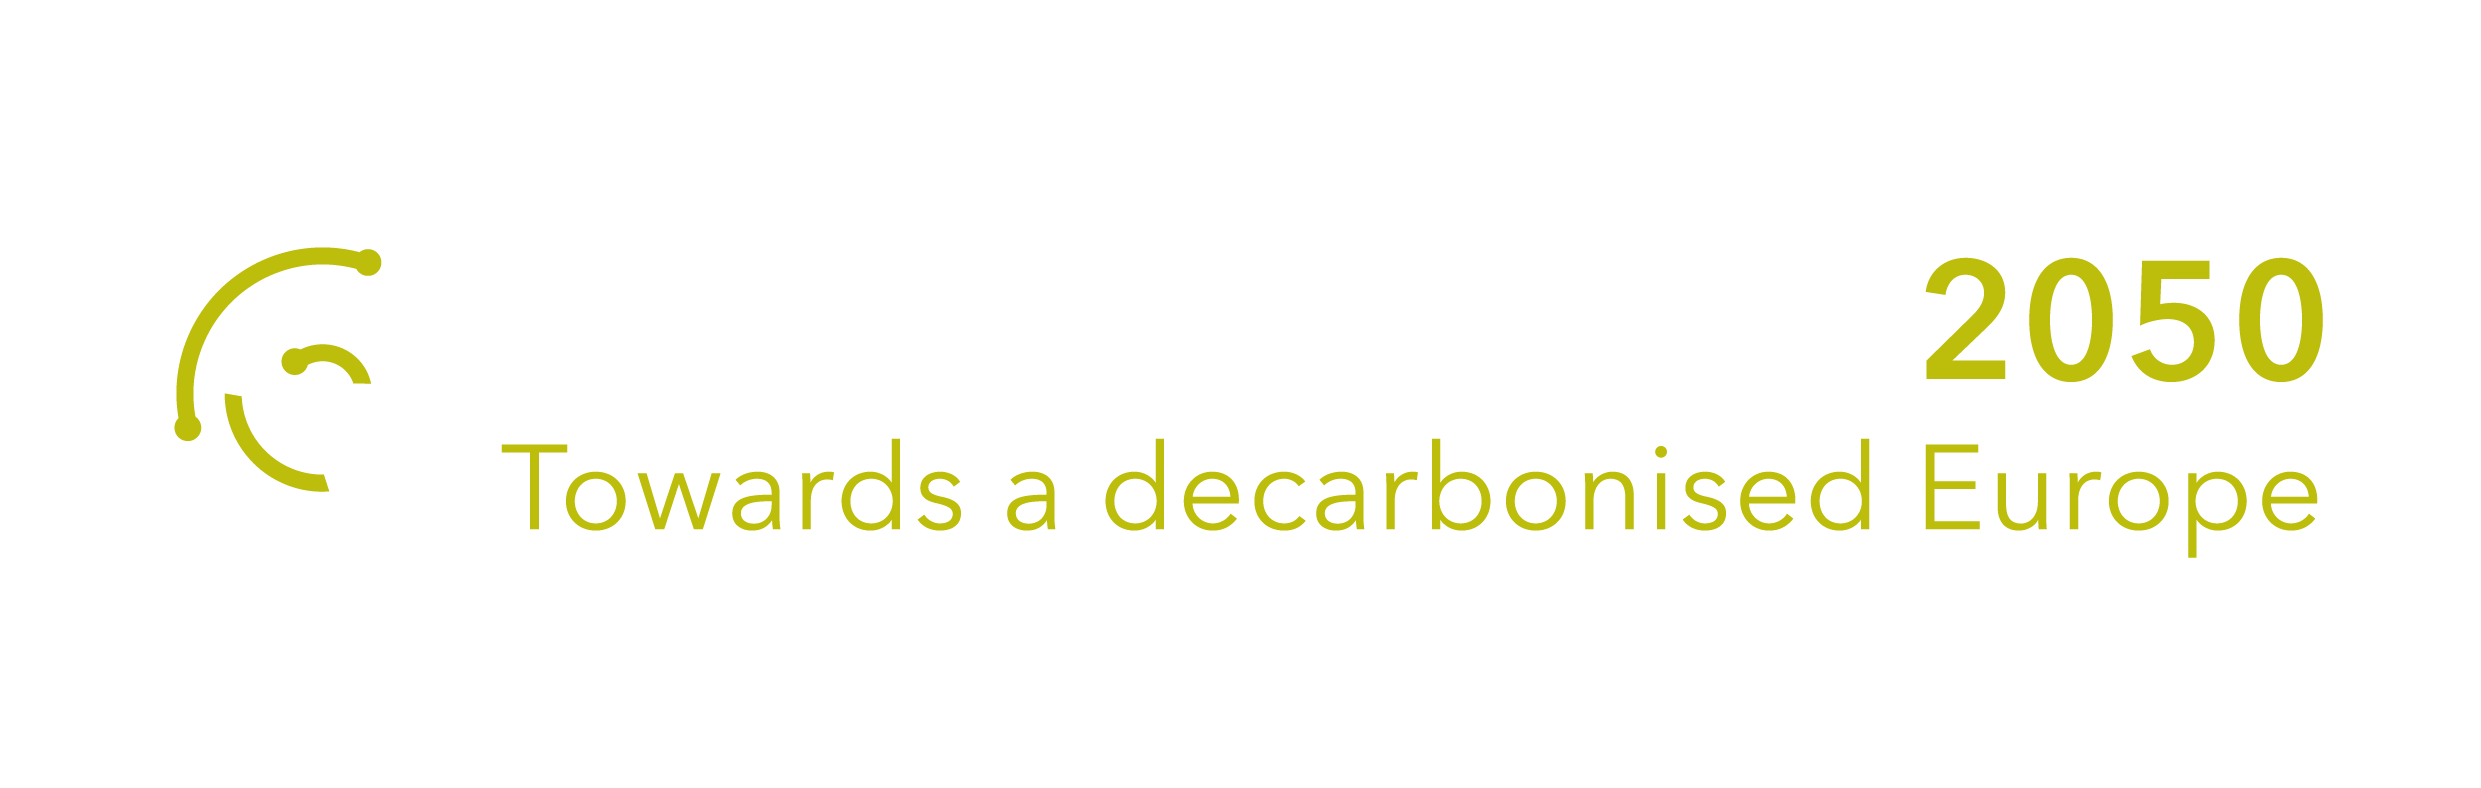 Energy System 2050